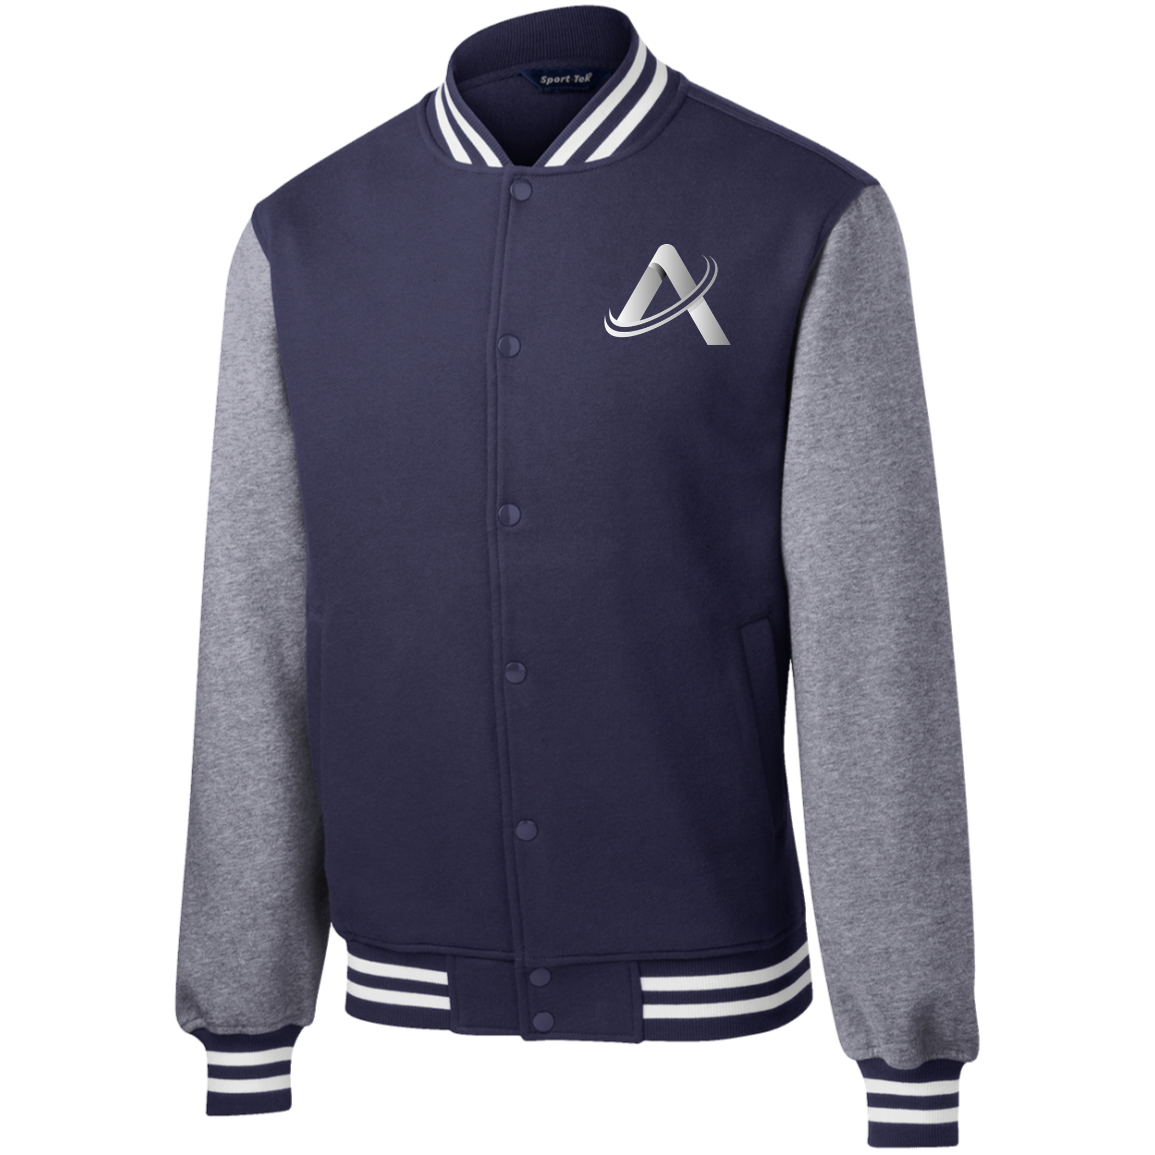 ATHLETiX Fleece Letterman Jacket